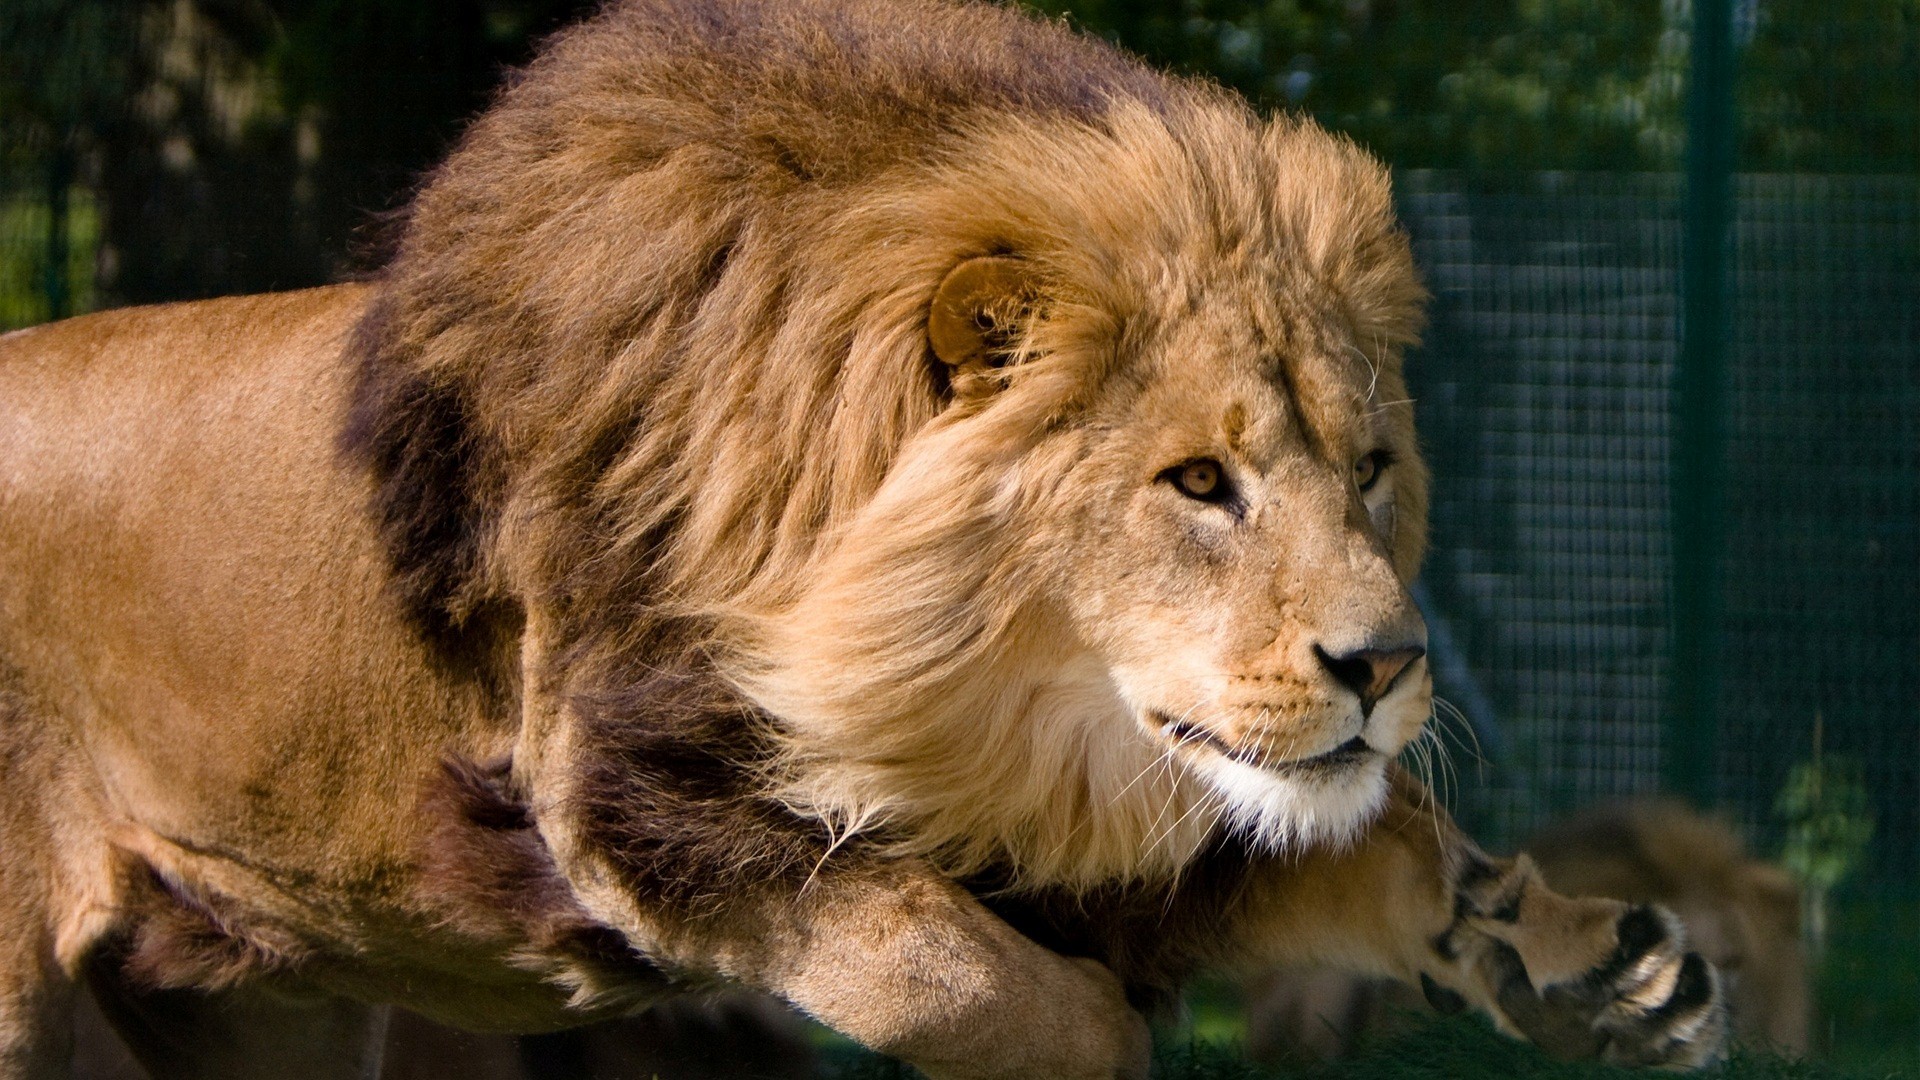 sfondi hd lion 1920x1080,leone,natura,capelli,animale terrestre,leone masai